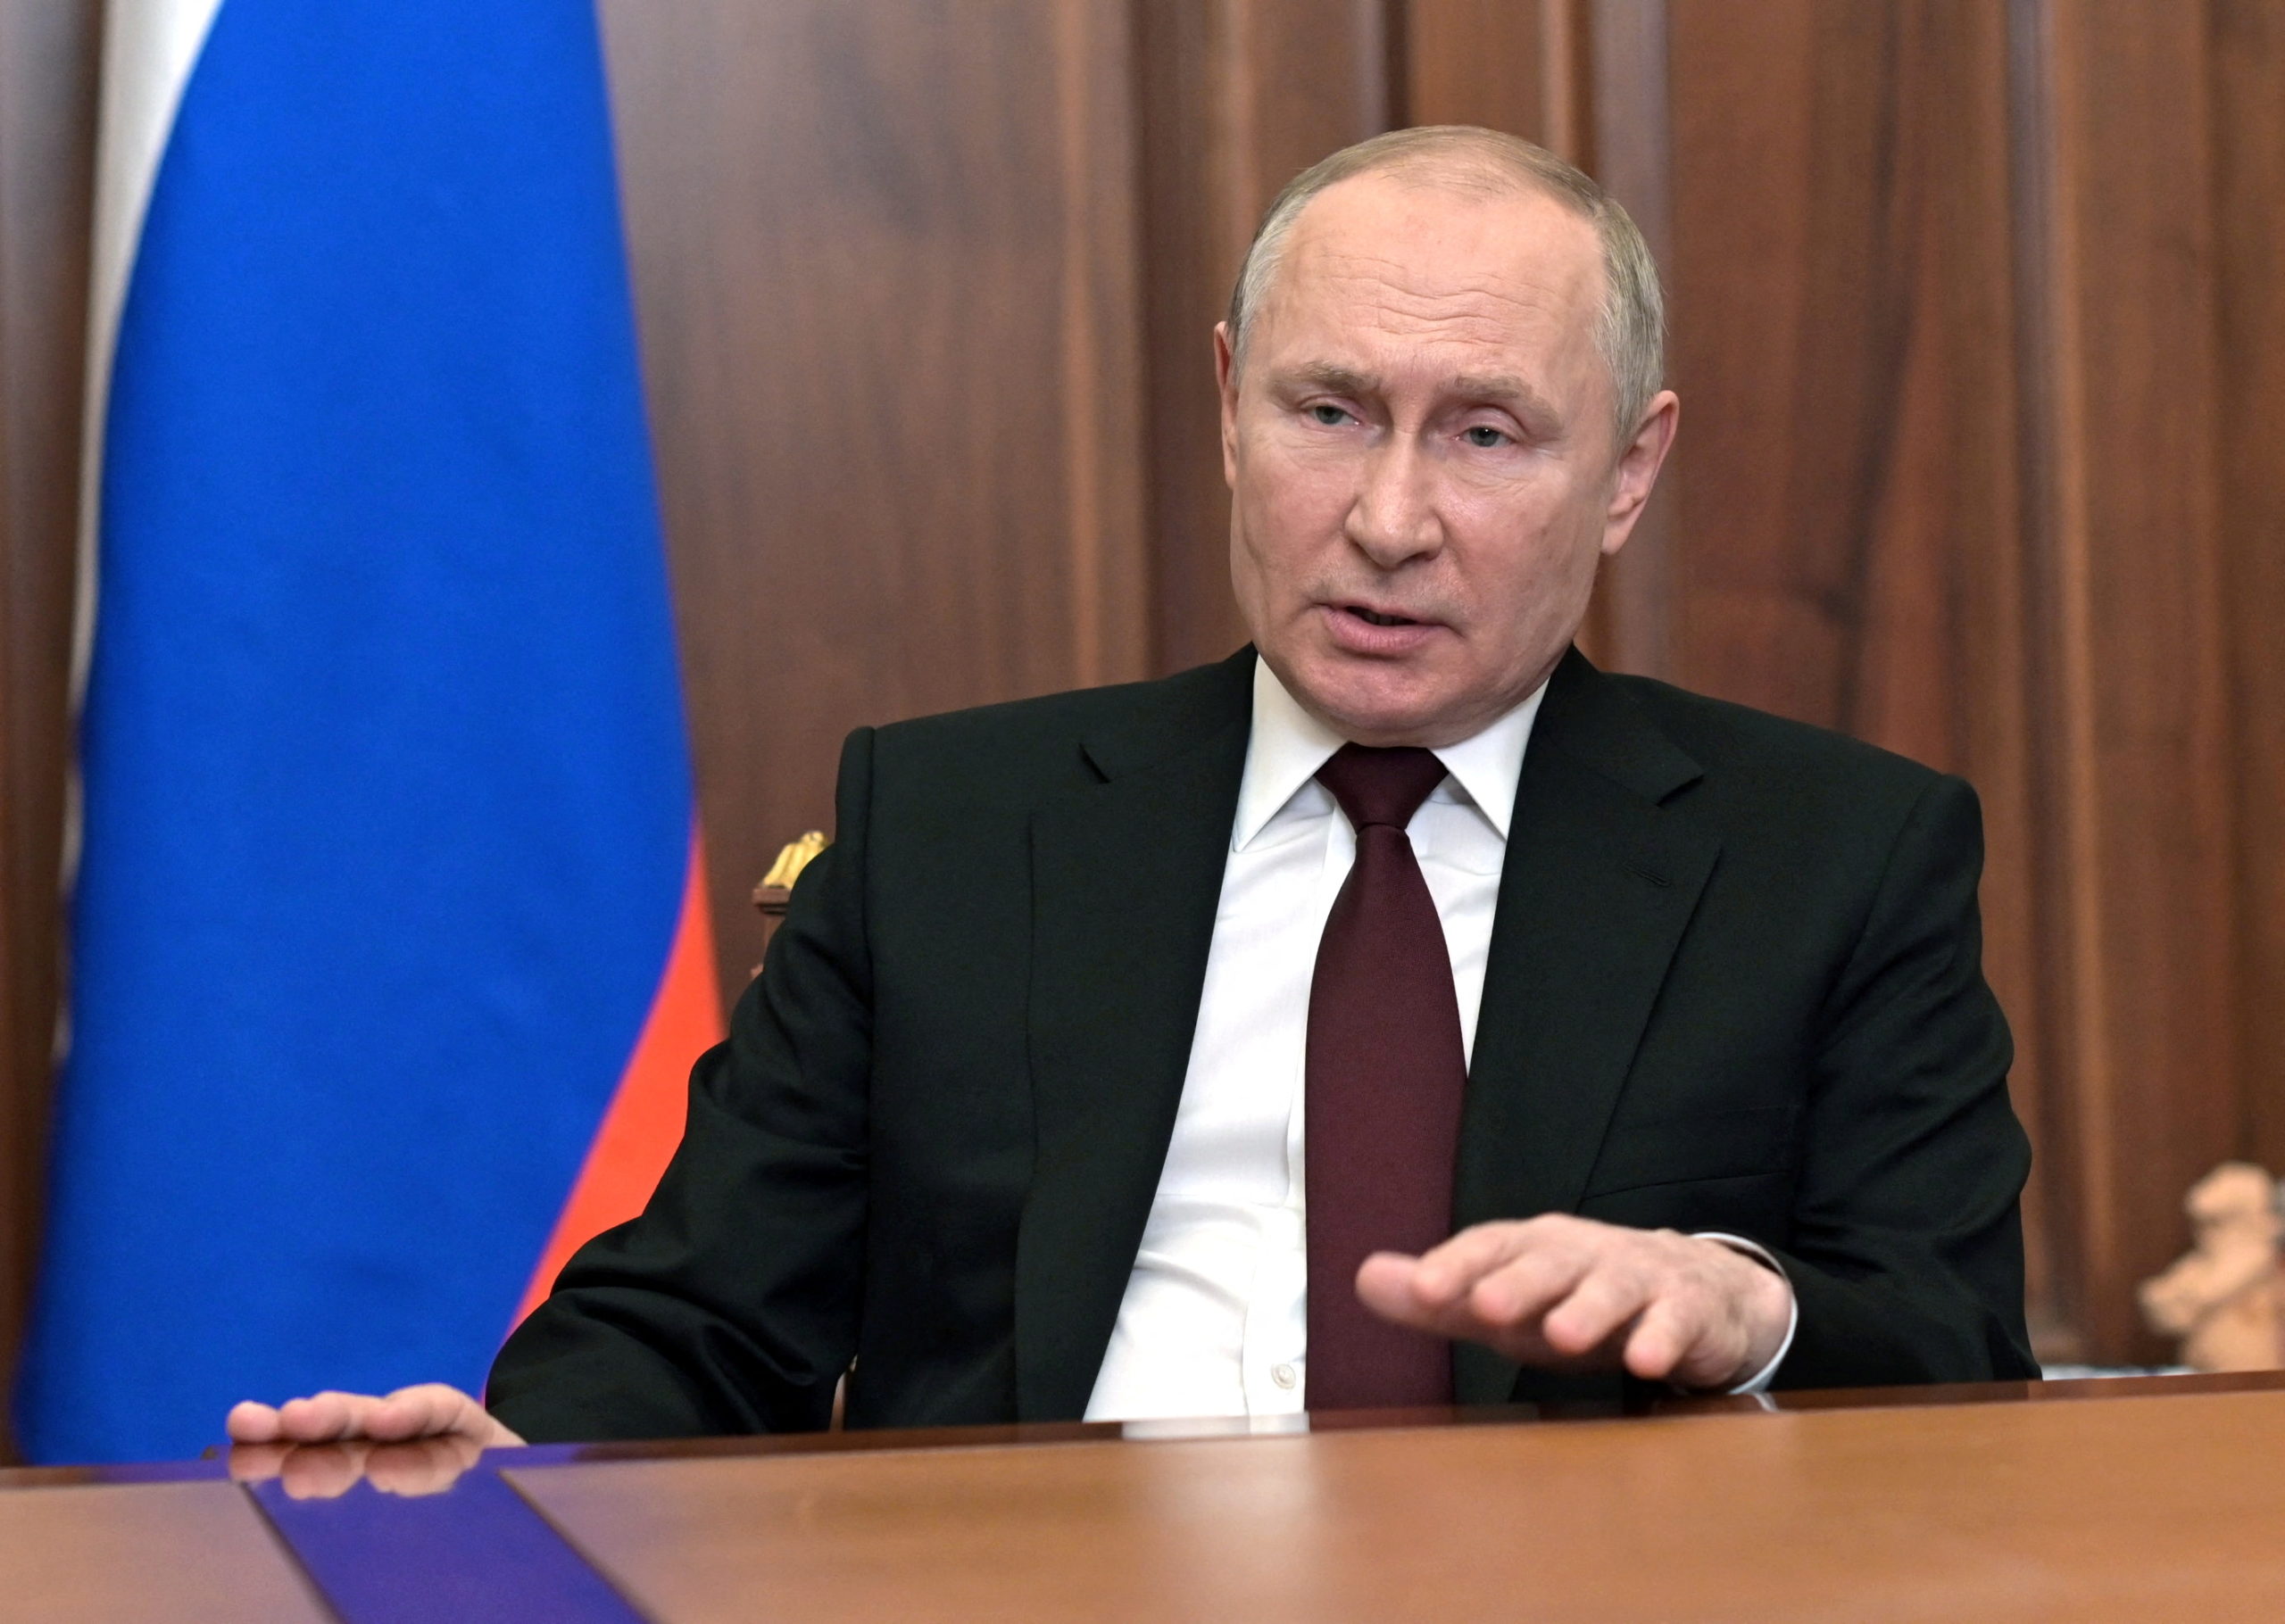 Sputnik/Alexey Nikolsky/Kremlin/Reuters